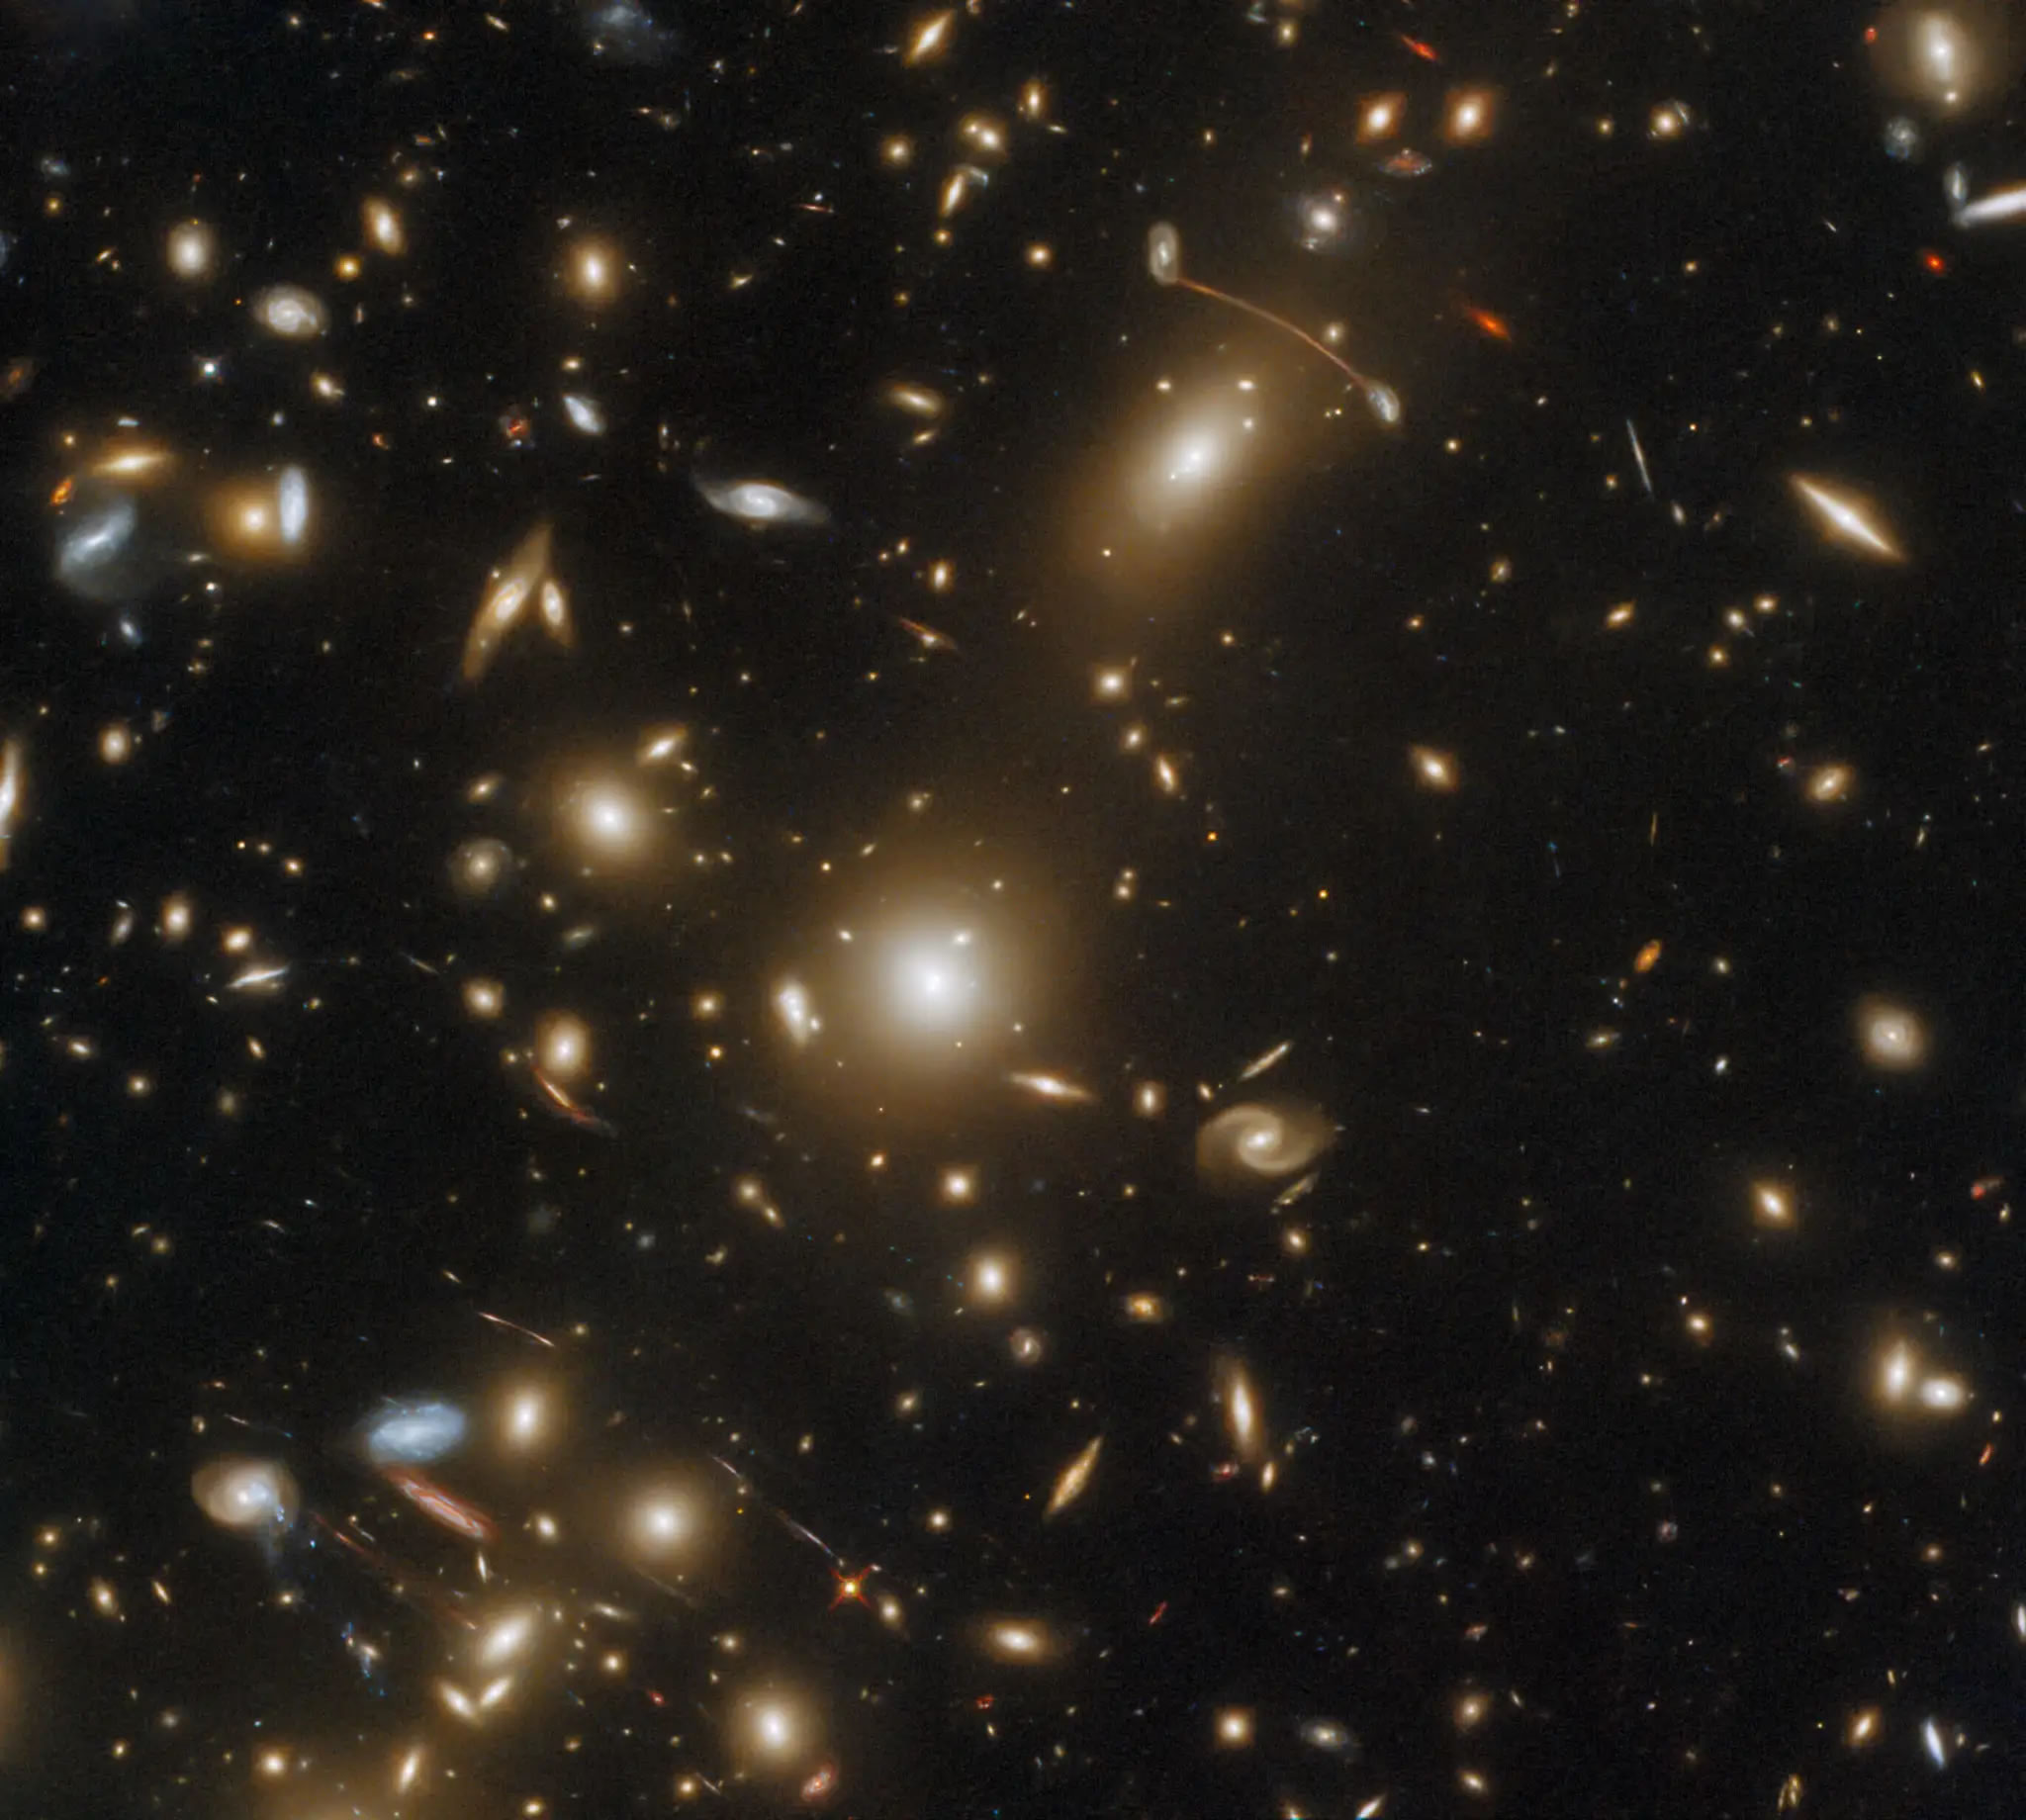 哈勃太空望远镜拍摄巨大星系团Abell 1351 扭曲了时空